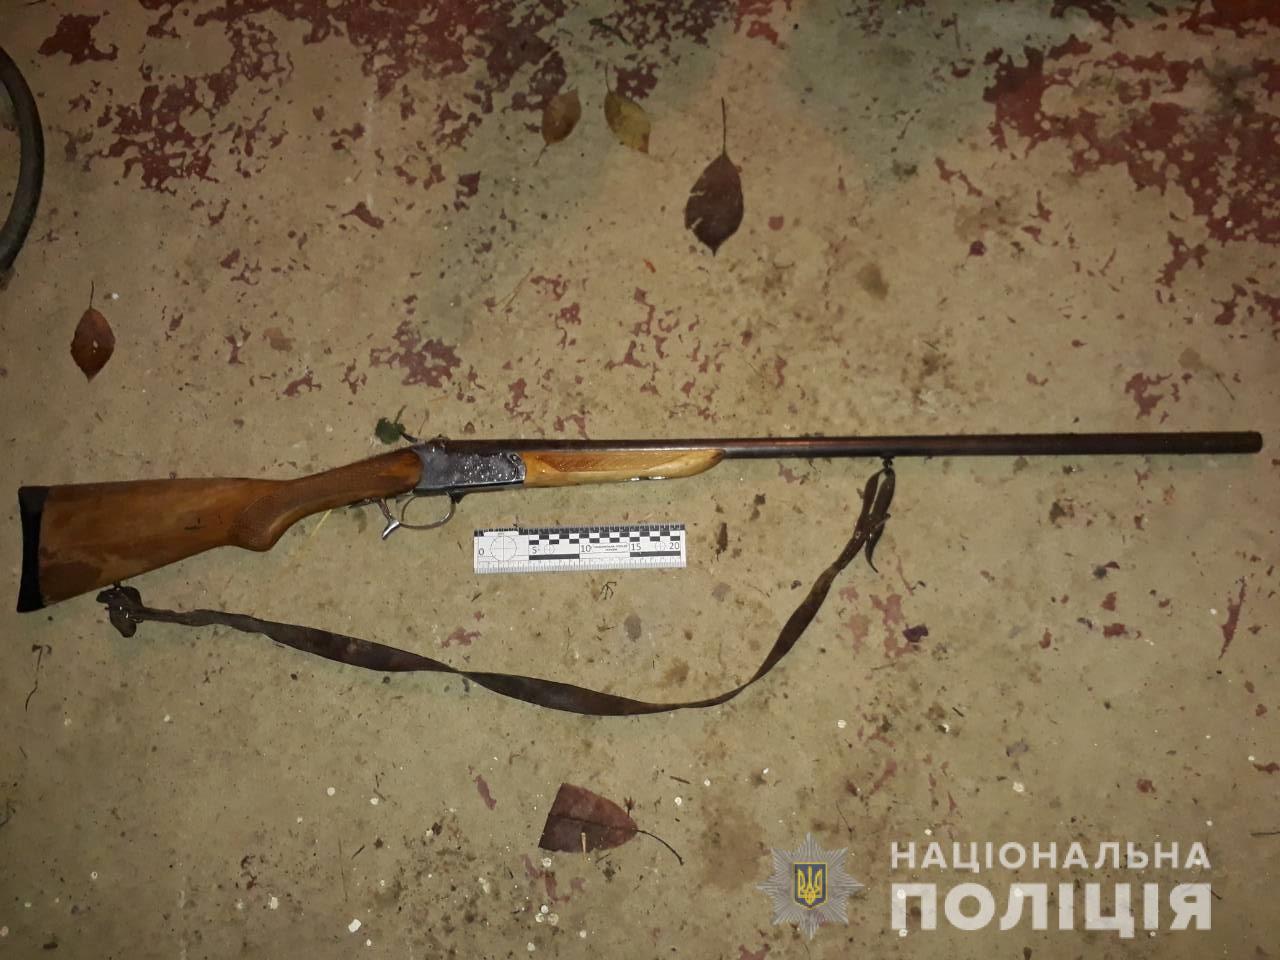 За фактом злочину співробітники Ужгородського відділення поліції, розпочали слідство. Обставини вбивства з’ясовує поліція.